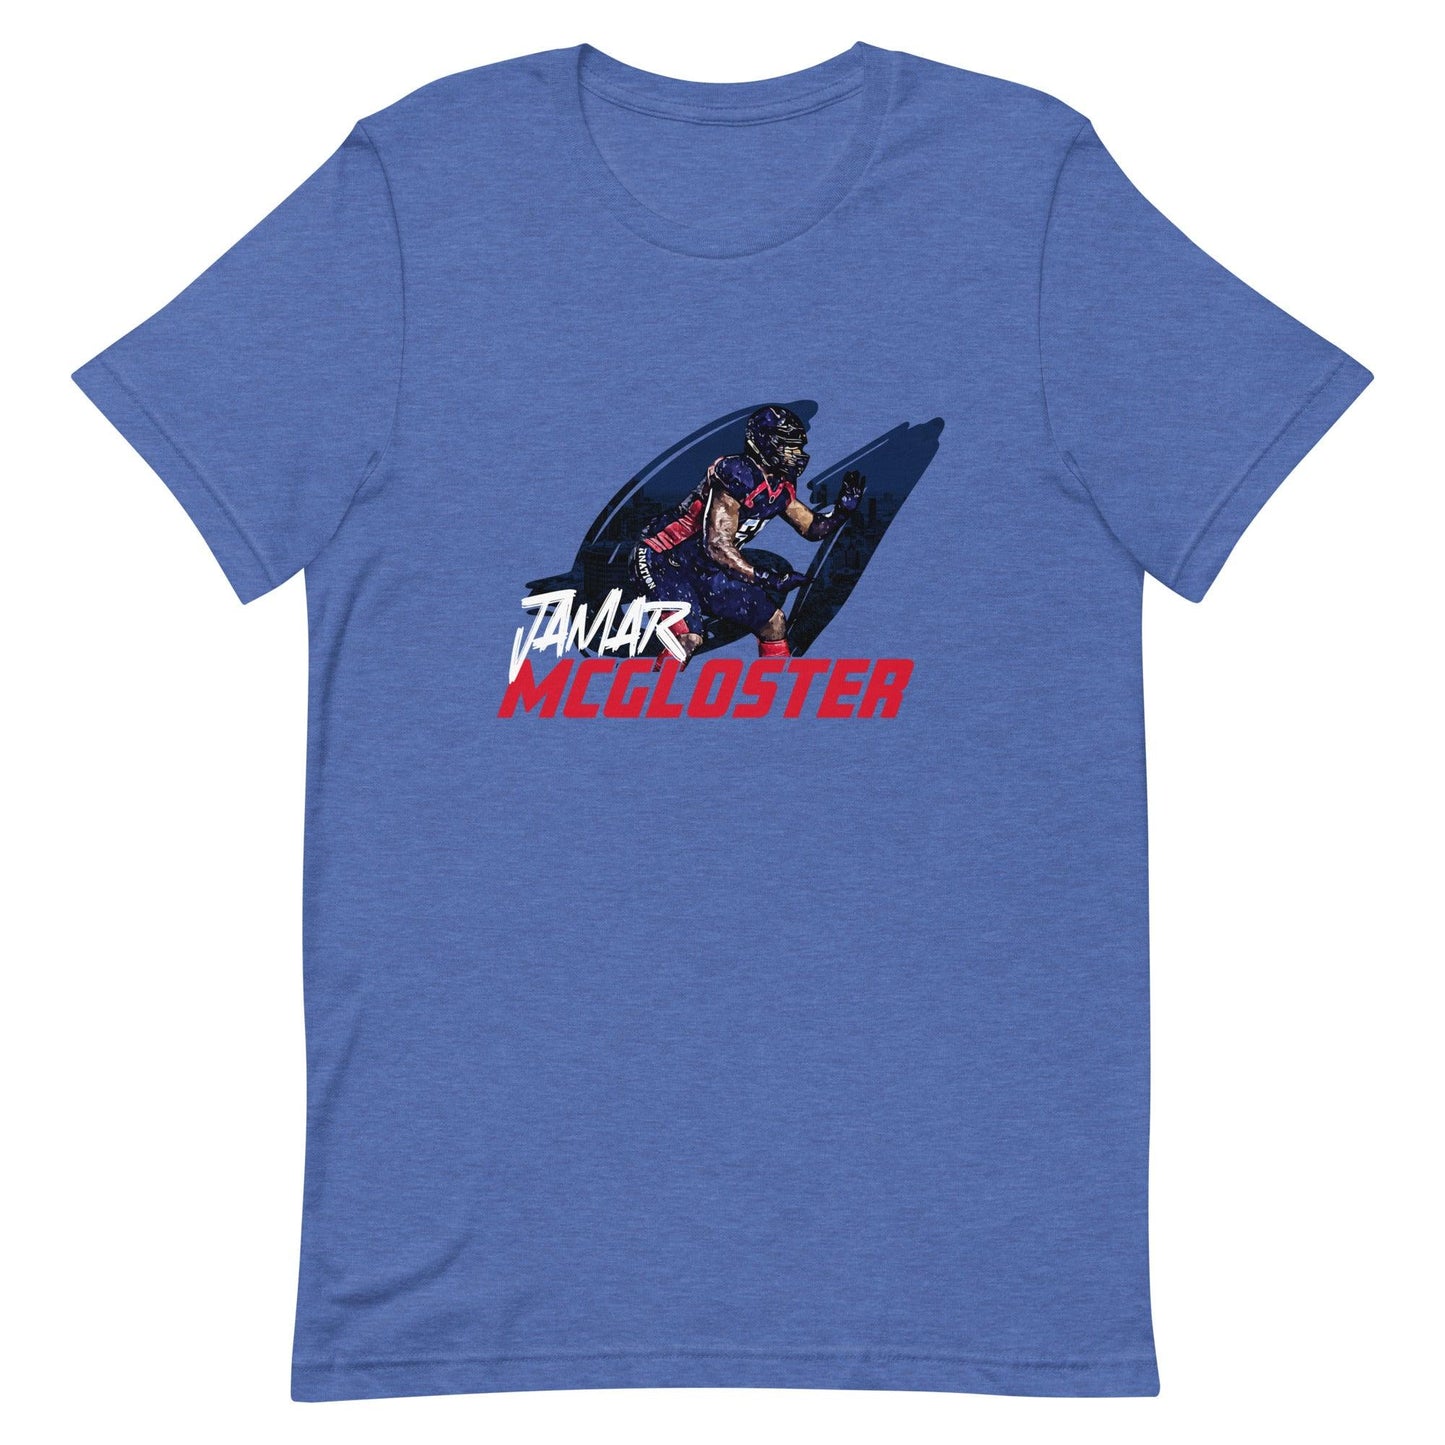 Jamar McGloster "Gameday" t-shirt - Fan Arch